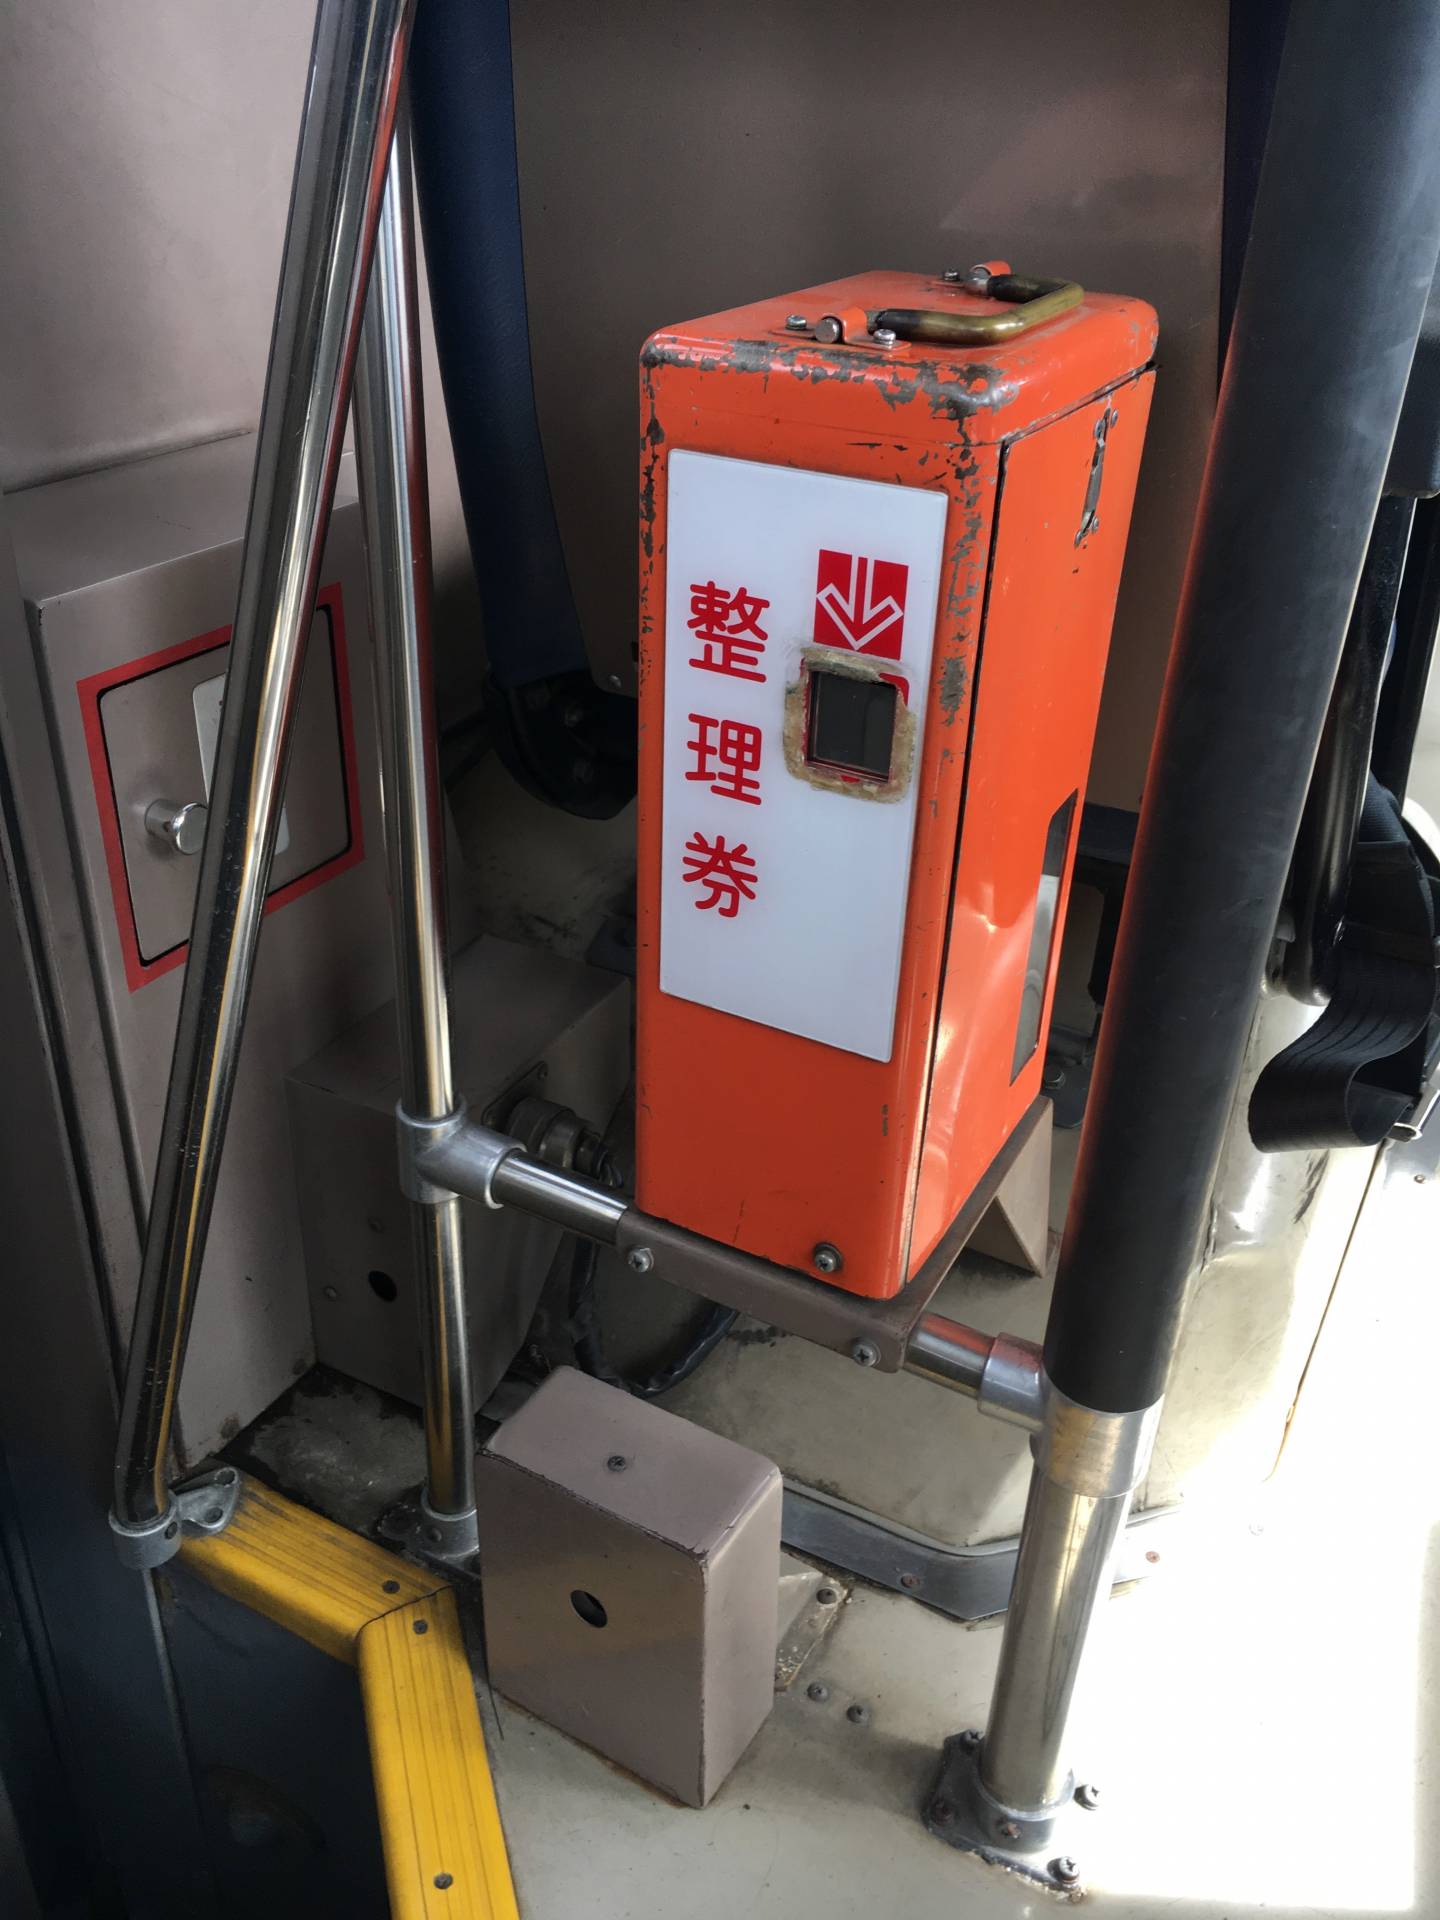 ticketautomat im bus in japan